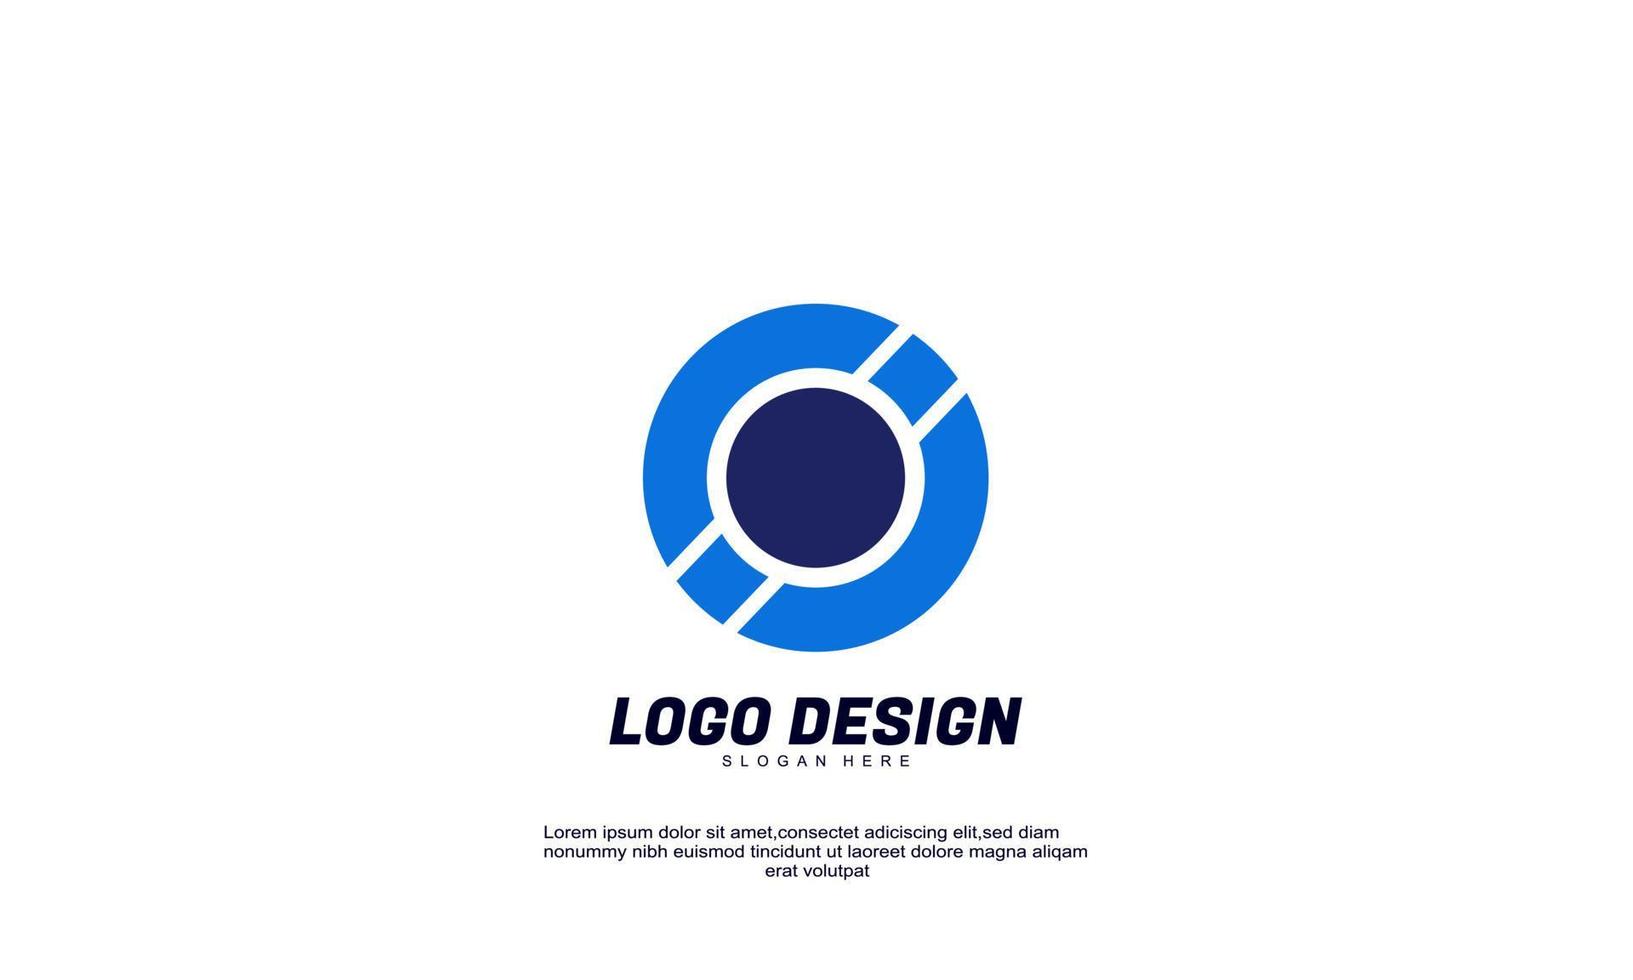 ehrfürchtige kreative ide-logomarke für wirtschaftsfinanzen unternehmensproduktivitätslogo-designvorlage vektor